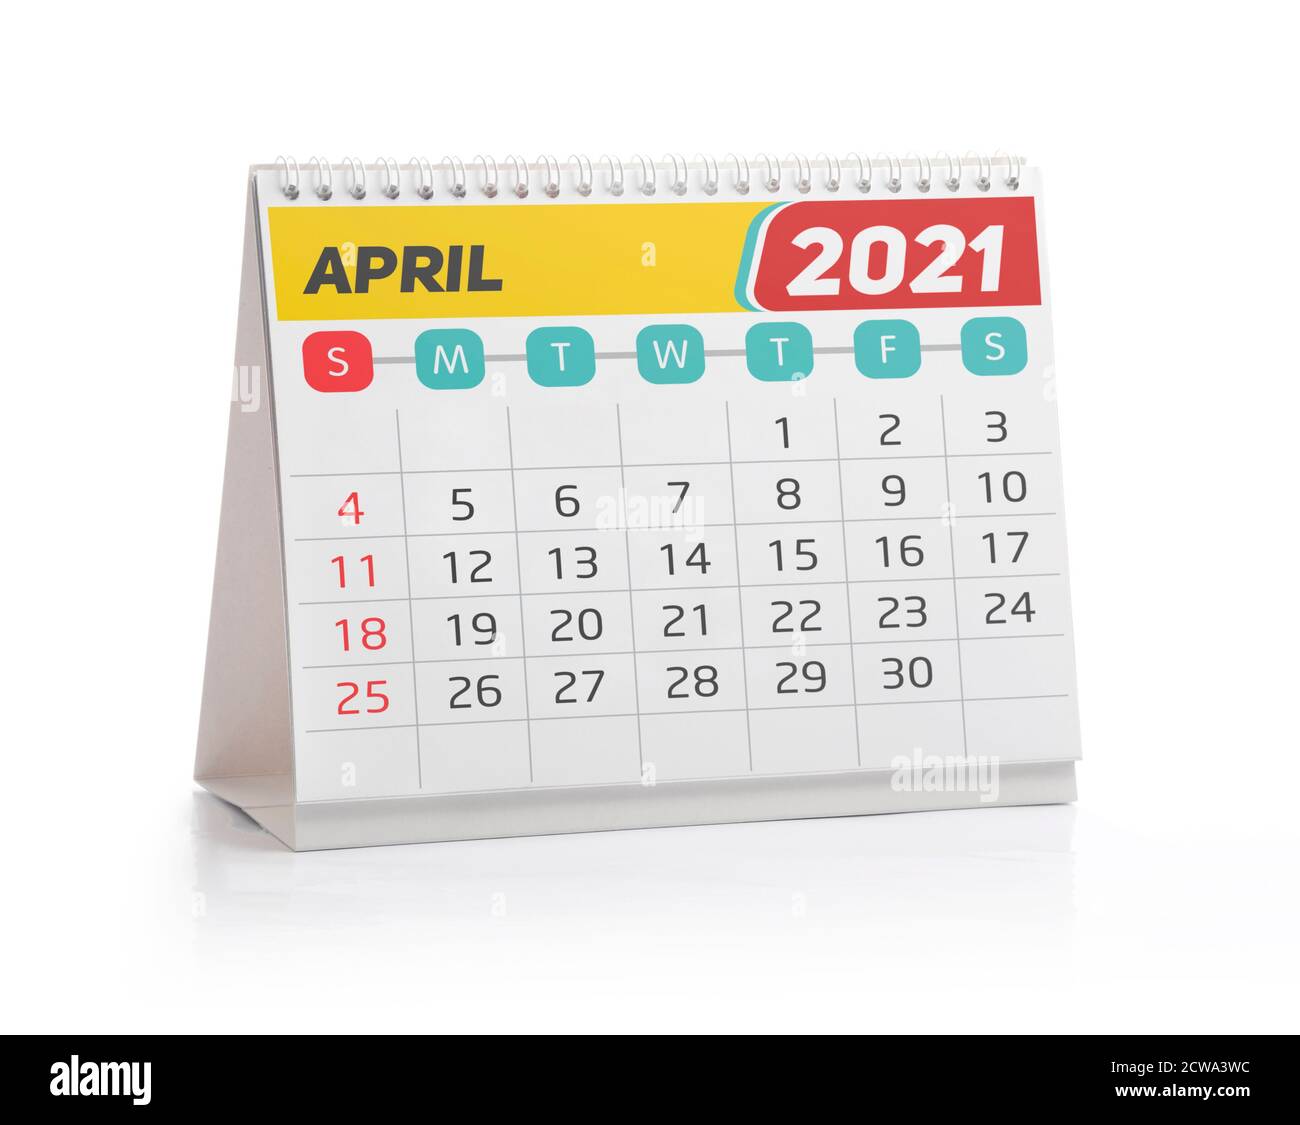 April 2021 Office Kalender isoliert auf Weiß Stockfoto